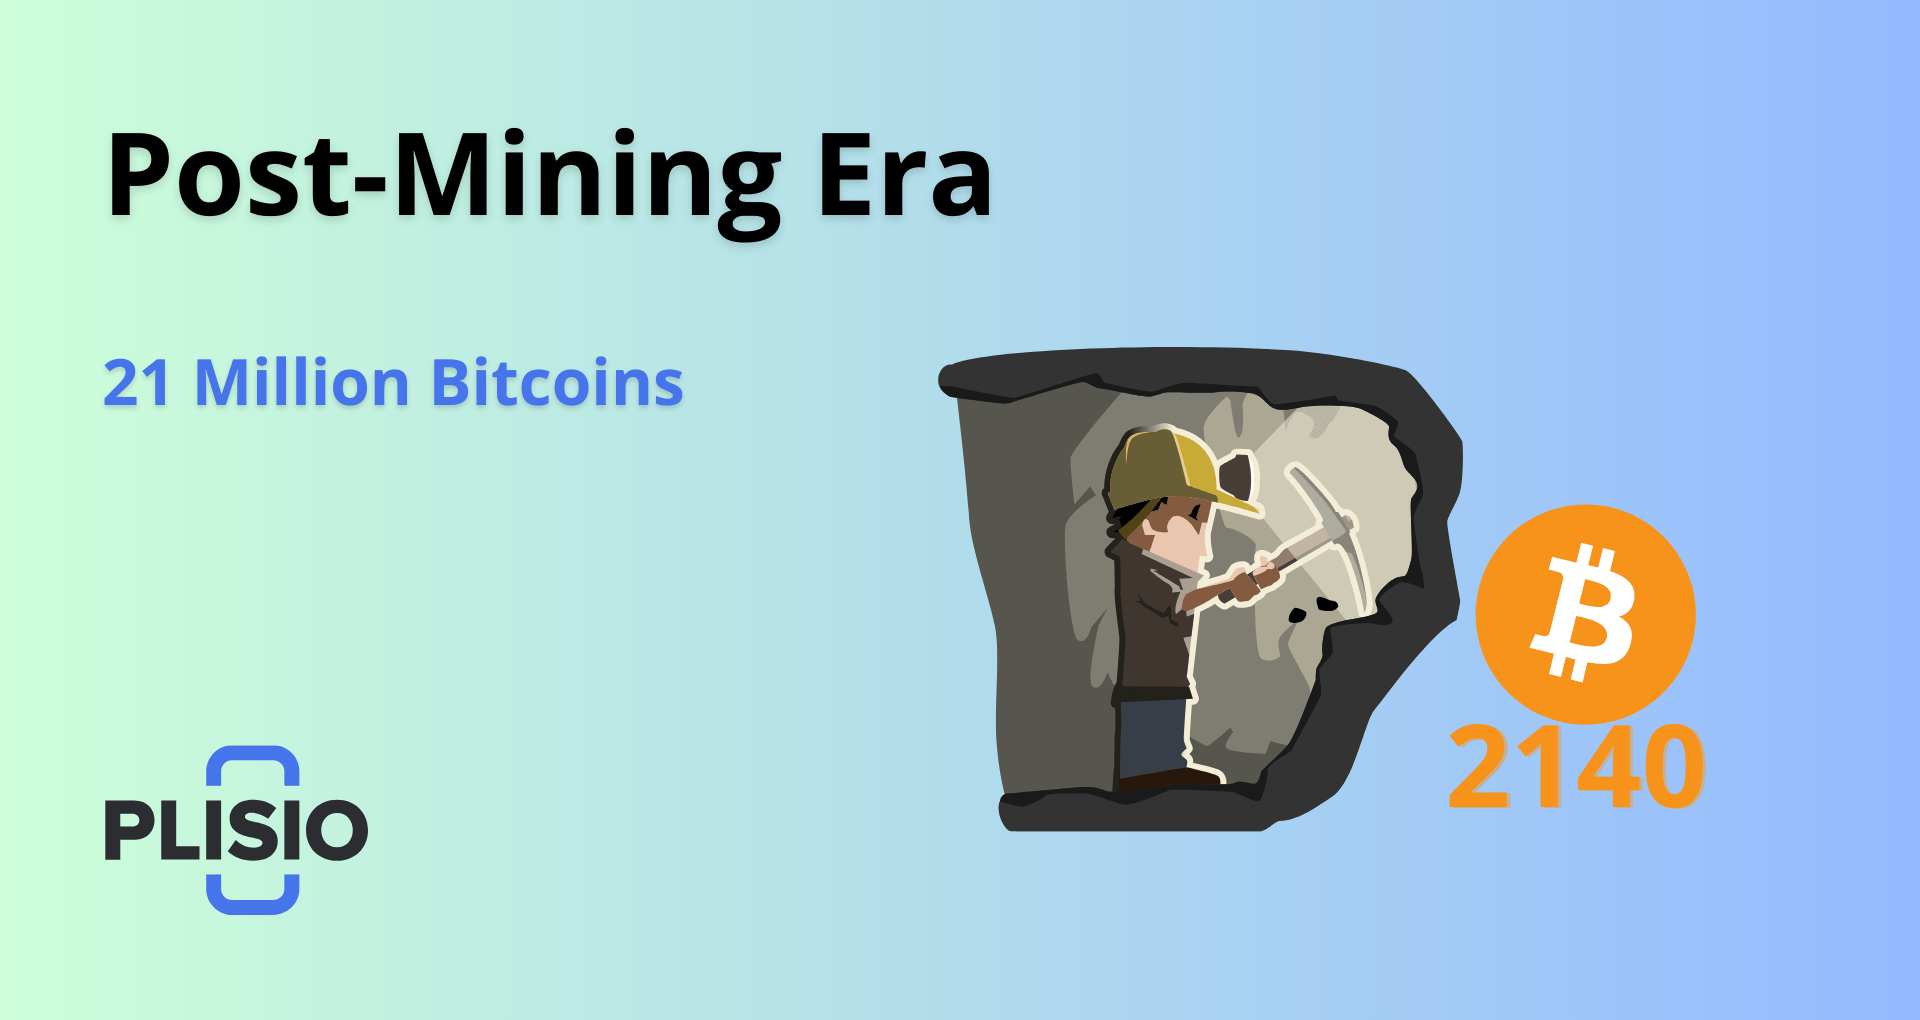 Era posterior a la minería: el destino de Bitcoin después de que se extraiga la última moneda